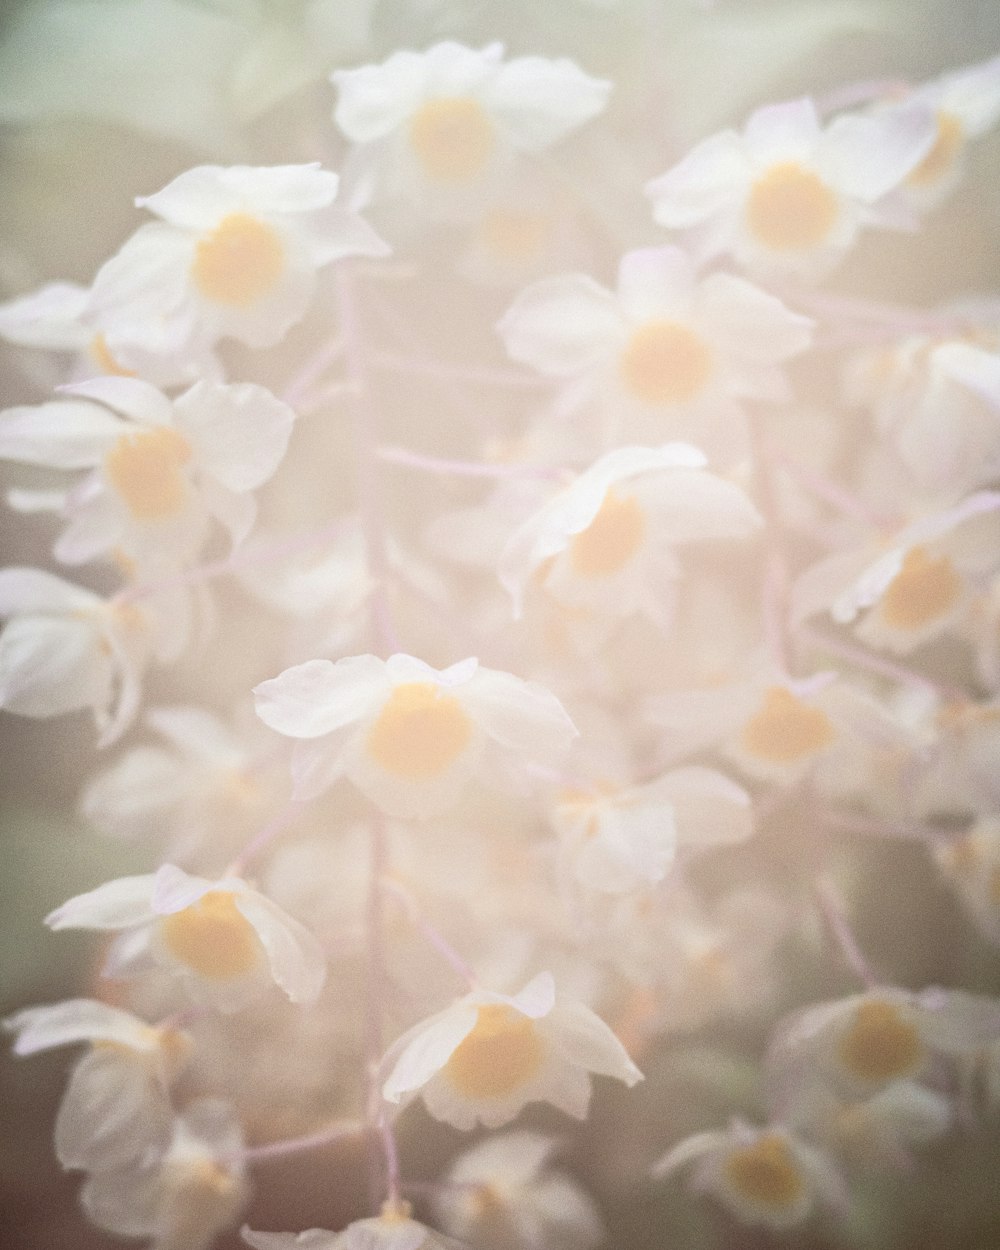 um close up de um ramo de flores brancas